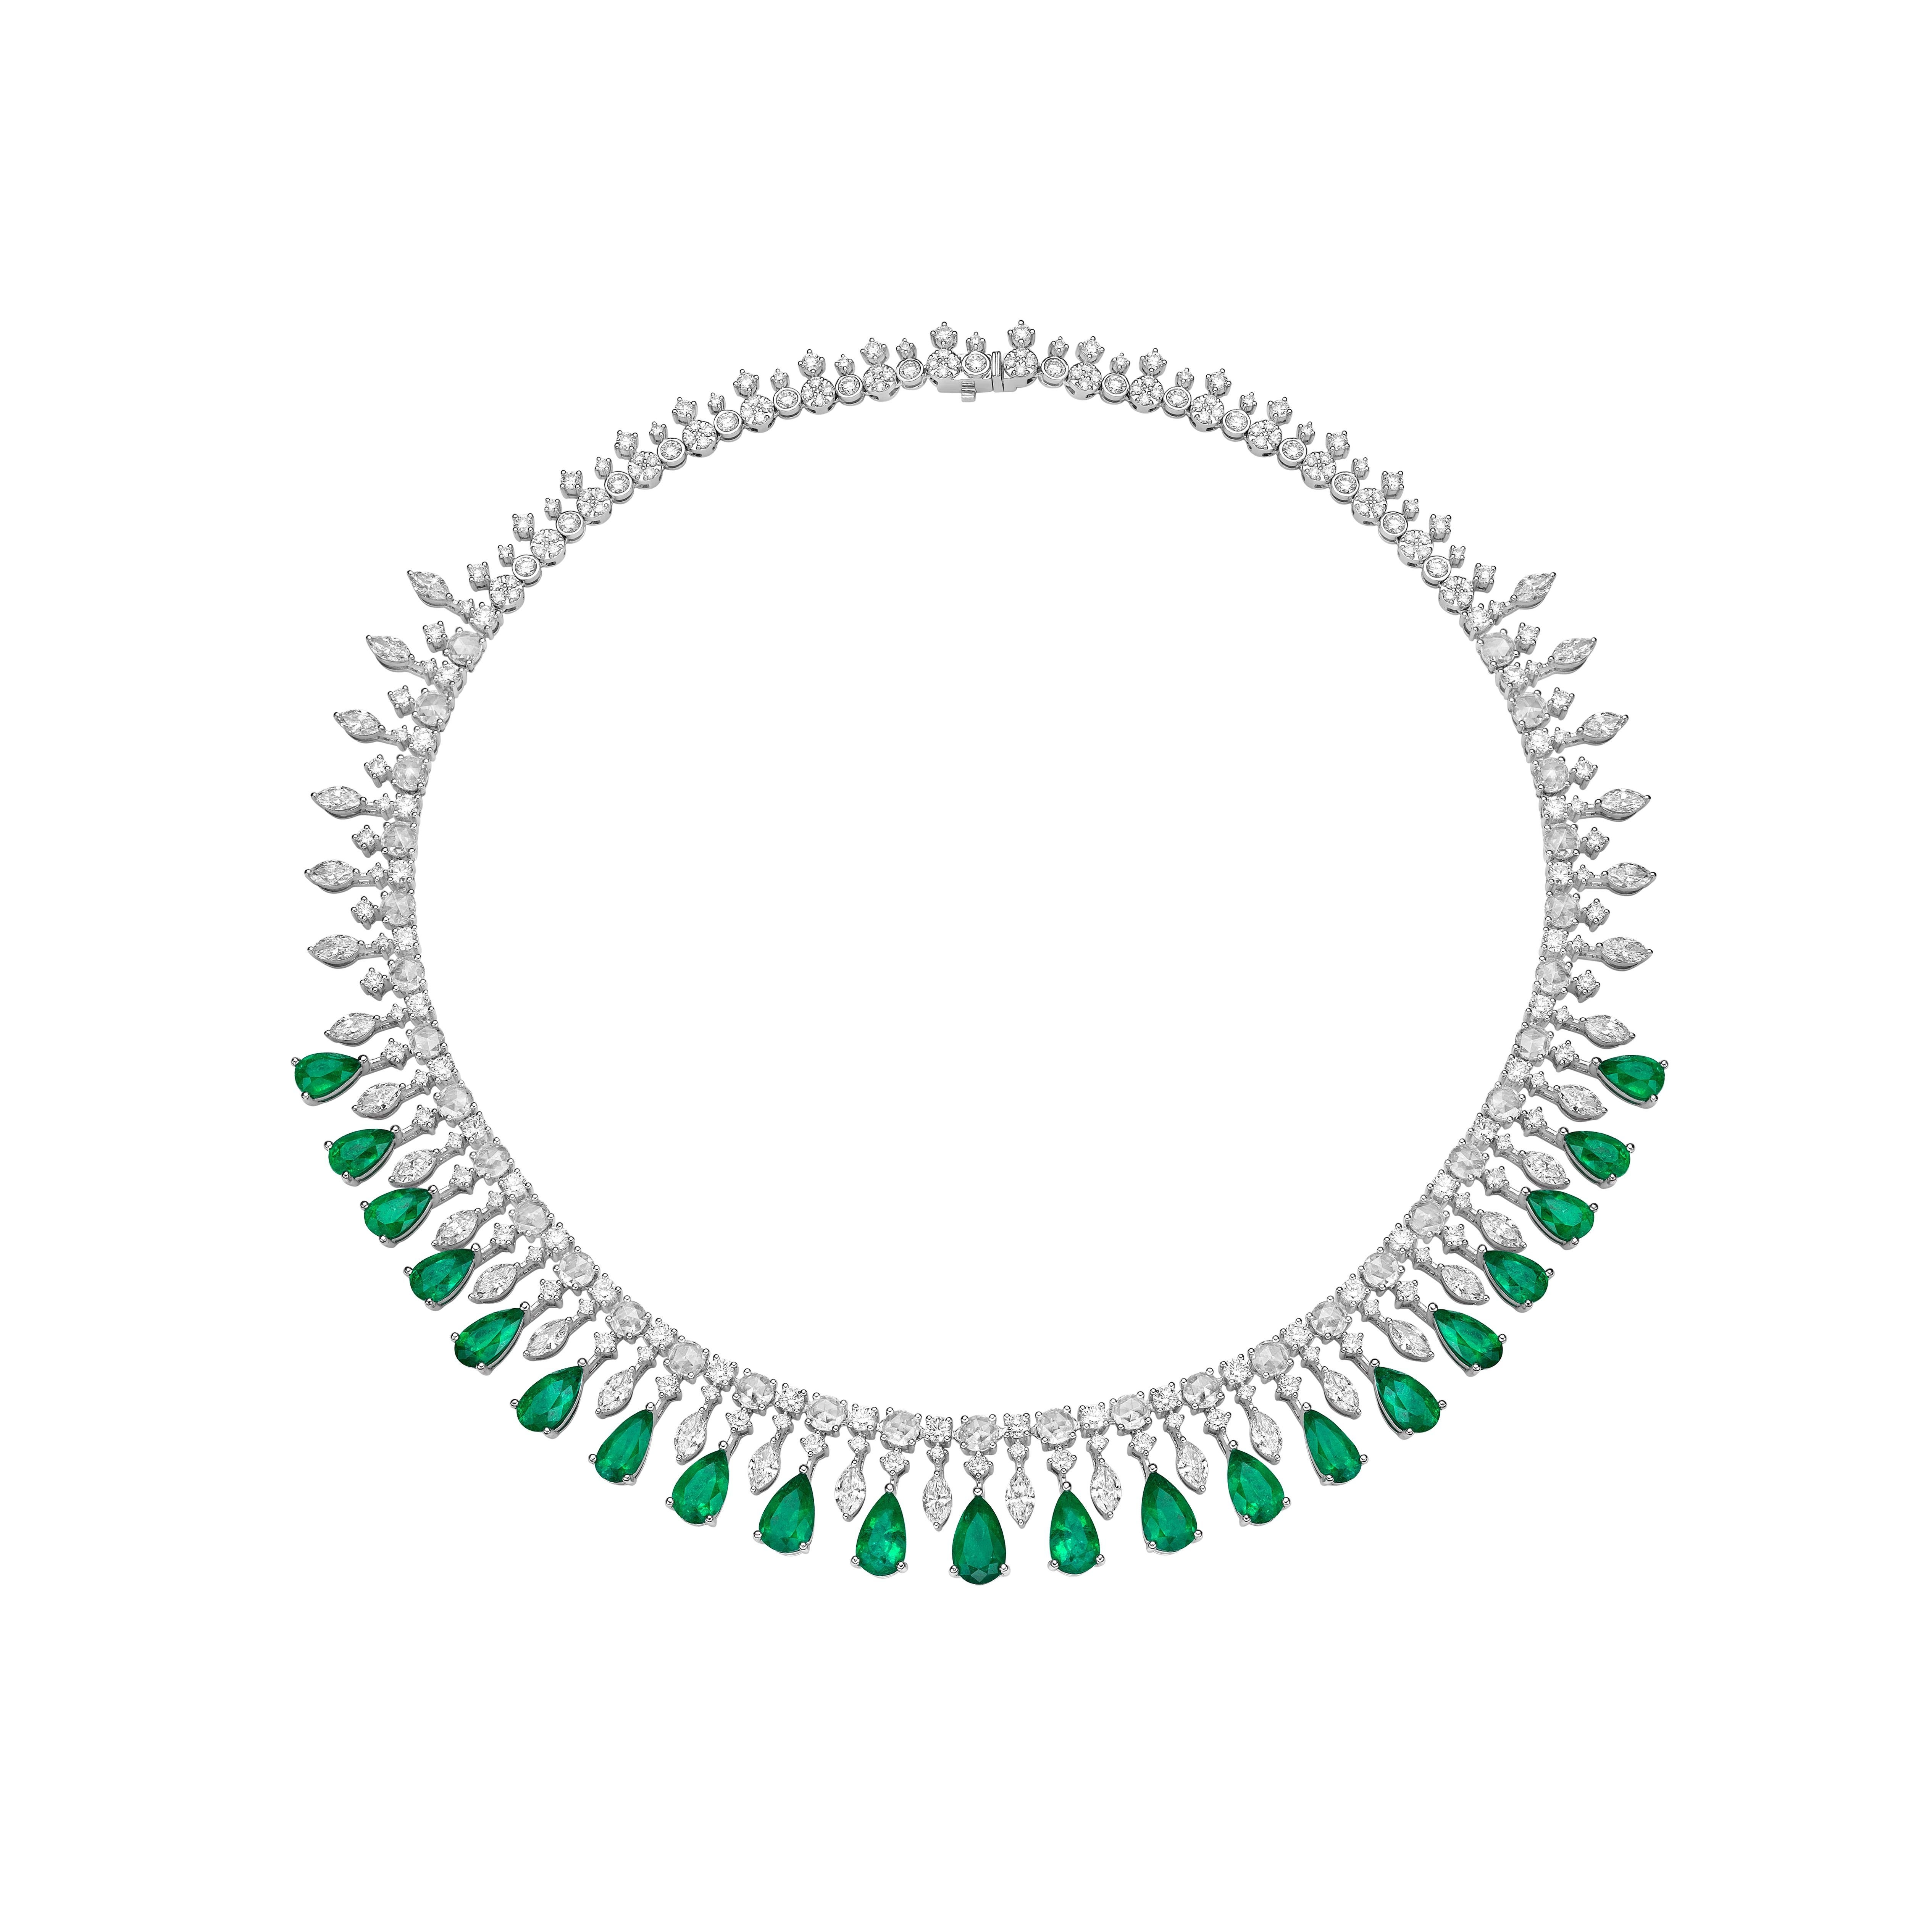 Sunflower Emeralds von Sunita Nahata Fine Design. In dieser Collection'S sind leuchtend grüne Smaragde auf einem Bett aus atemberaubenden weißen Diamanten in Weißgold gefasst. Eine zierliche und filigrane Hochzeitskette, die dennoch einen